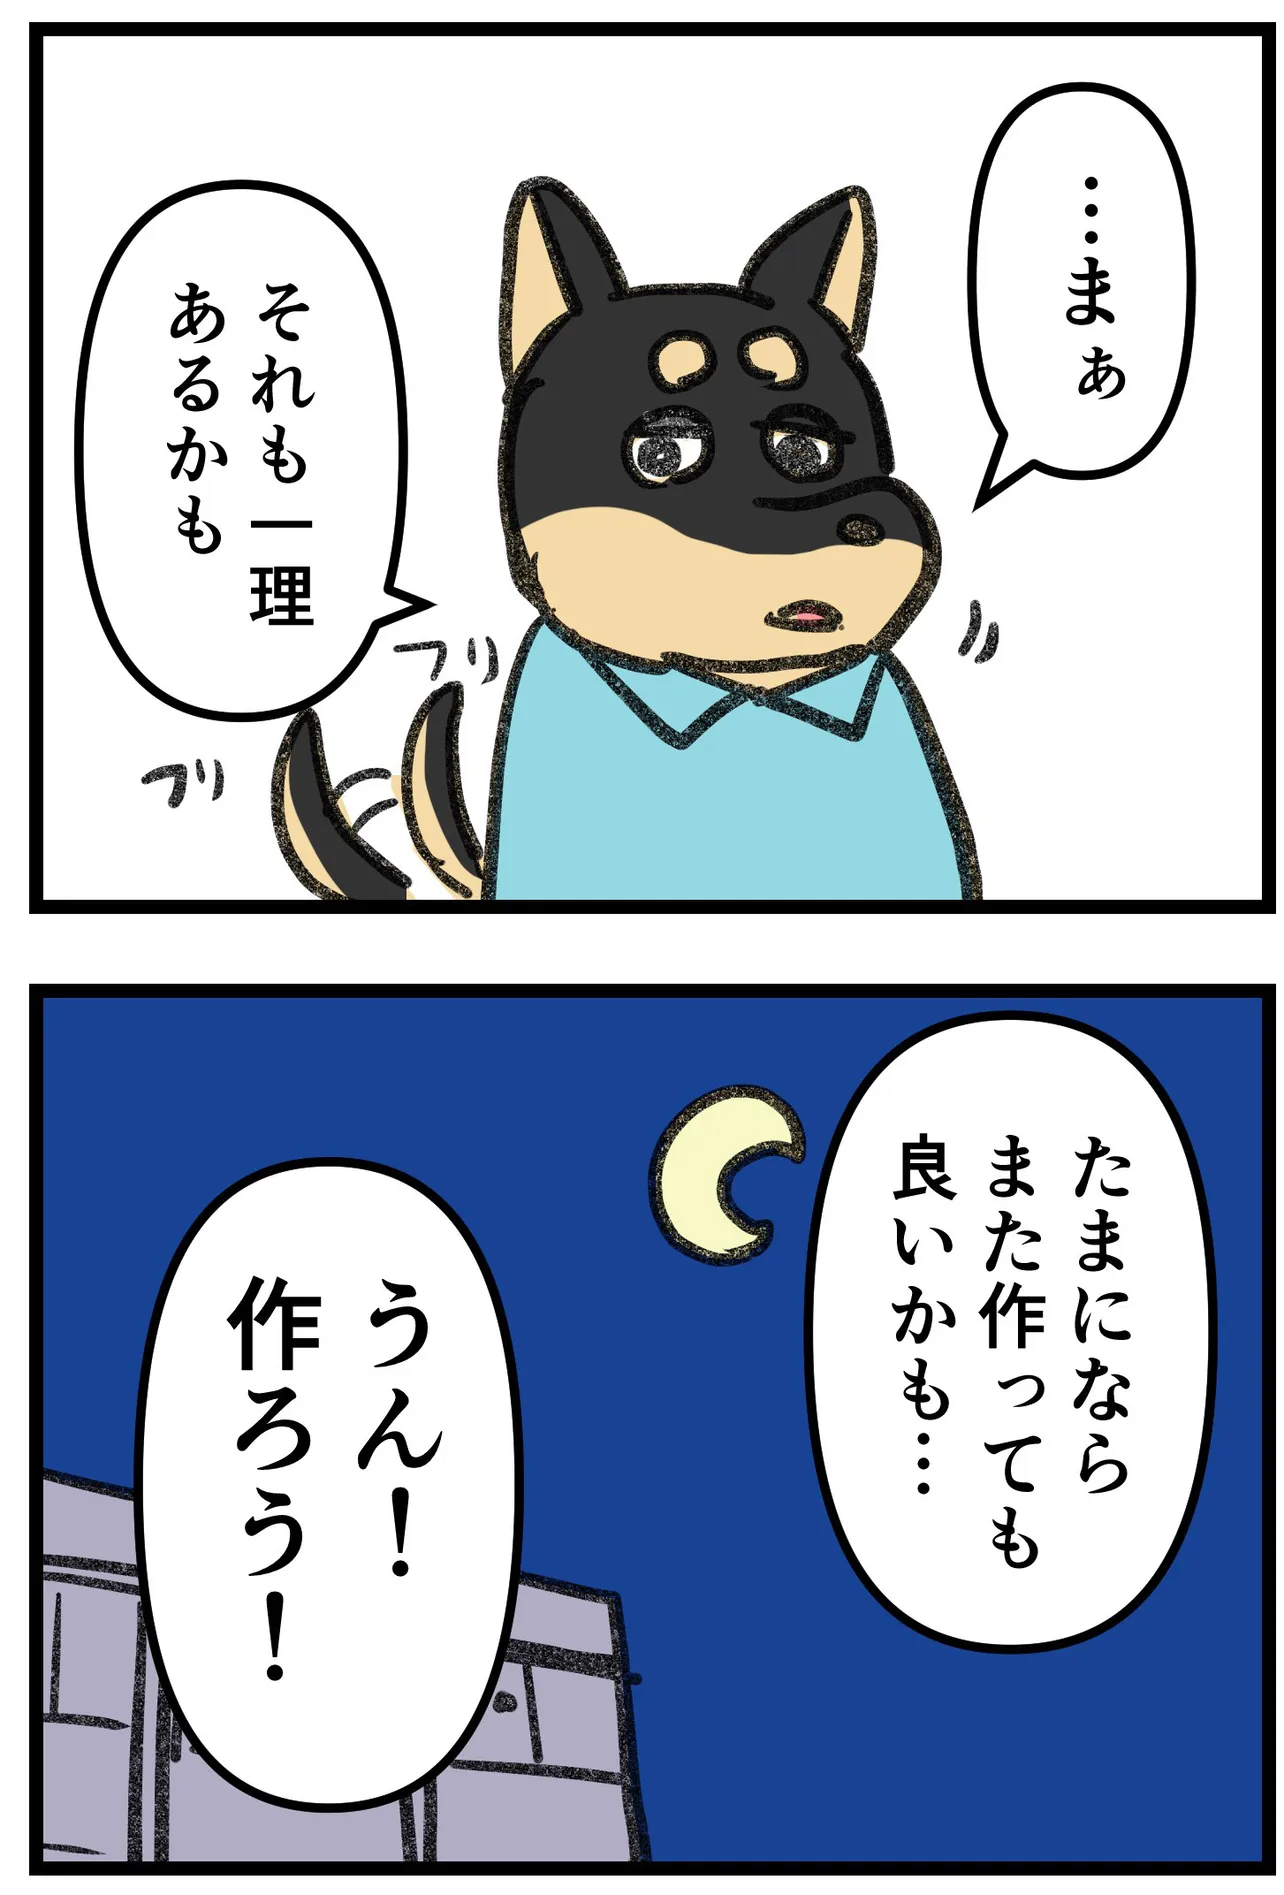 『柴犬二匹が山菜の天ぷらを作って食べる話』(16/16)